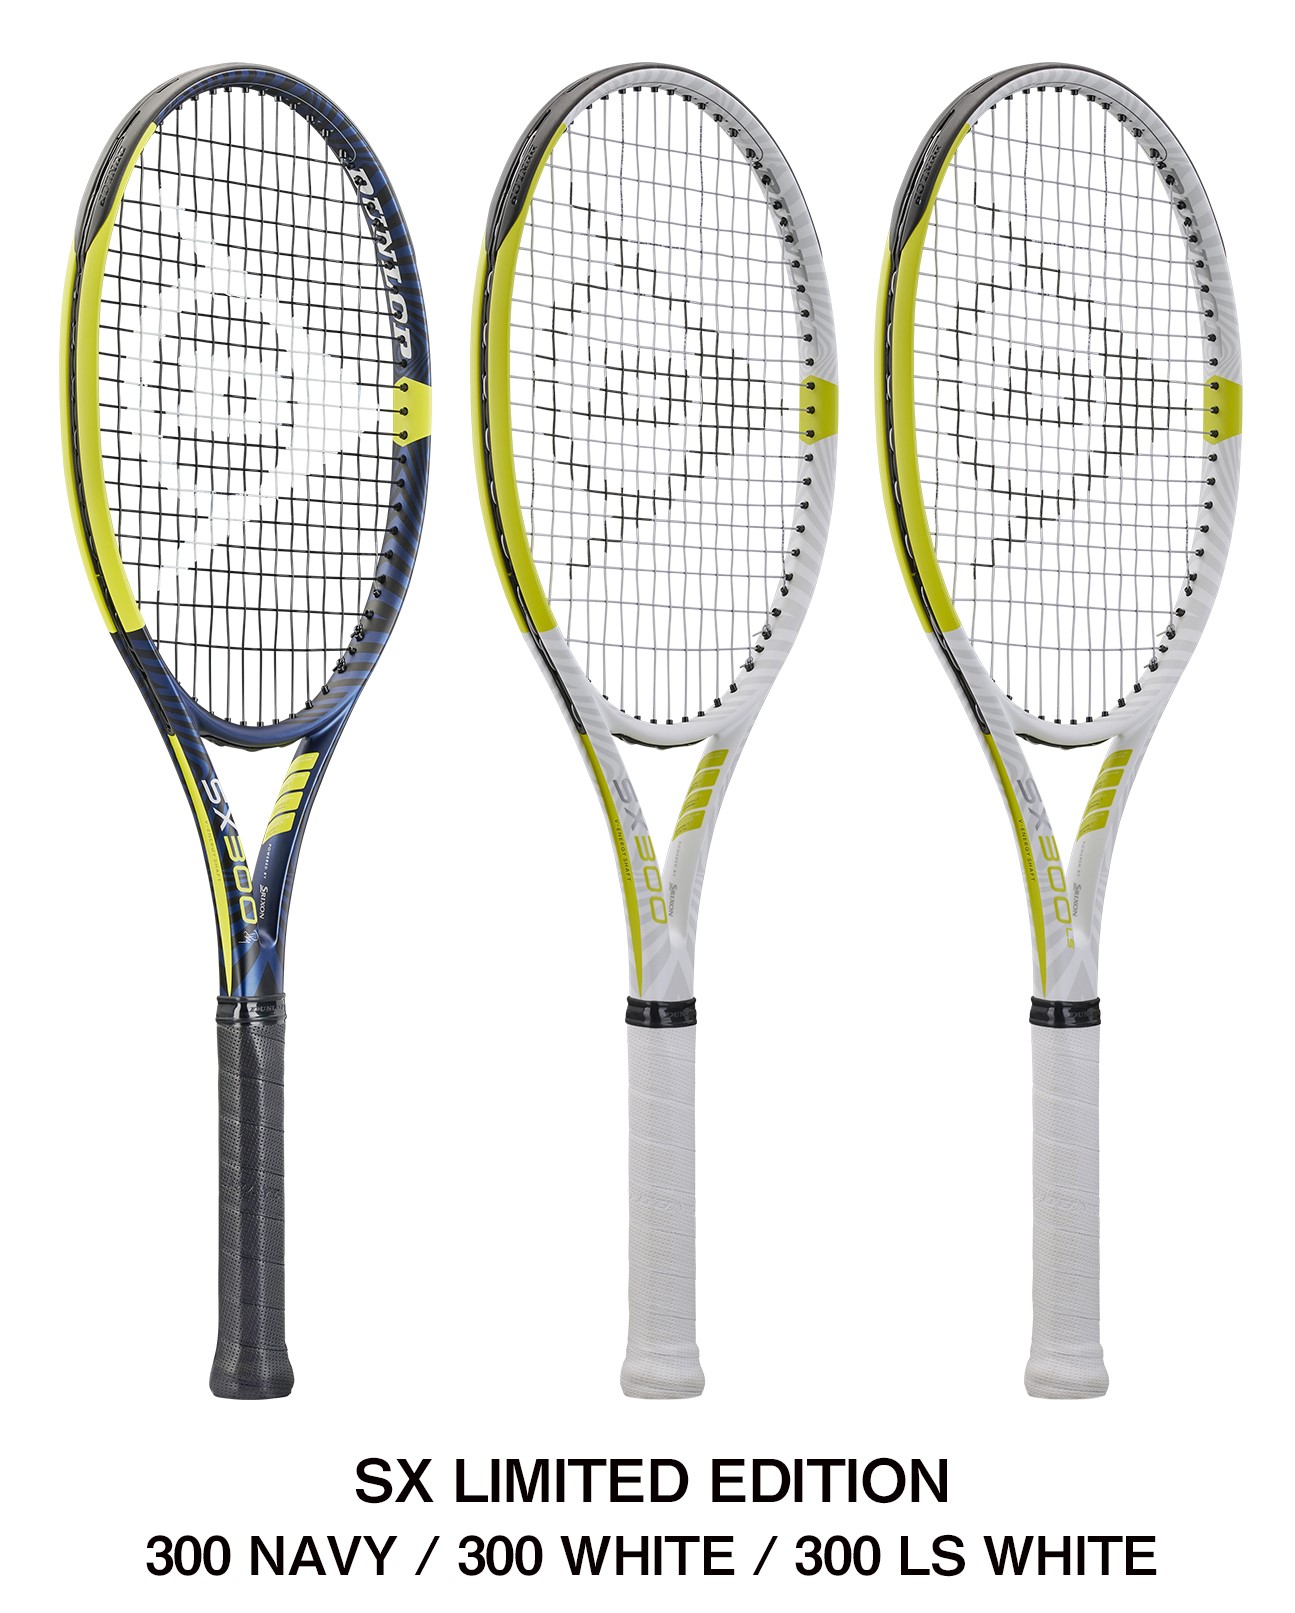 ダンロップテニスラケット「SX」シリーズ新デザイン2色を数量限定で新